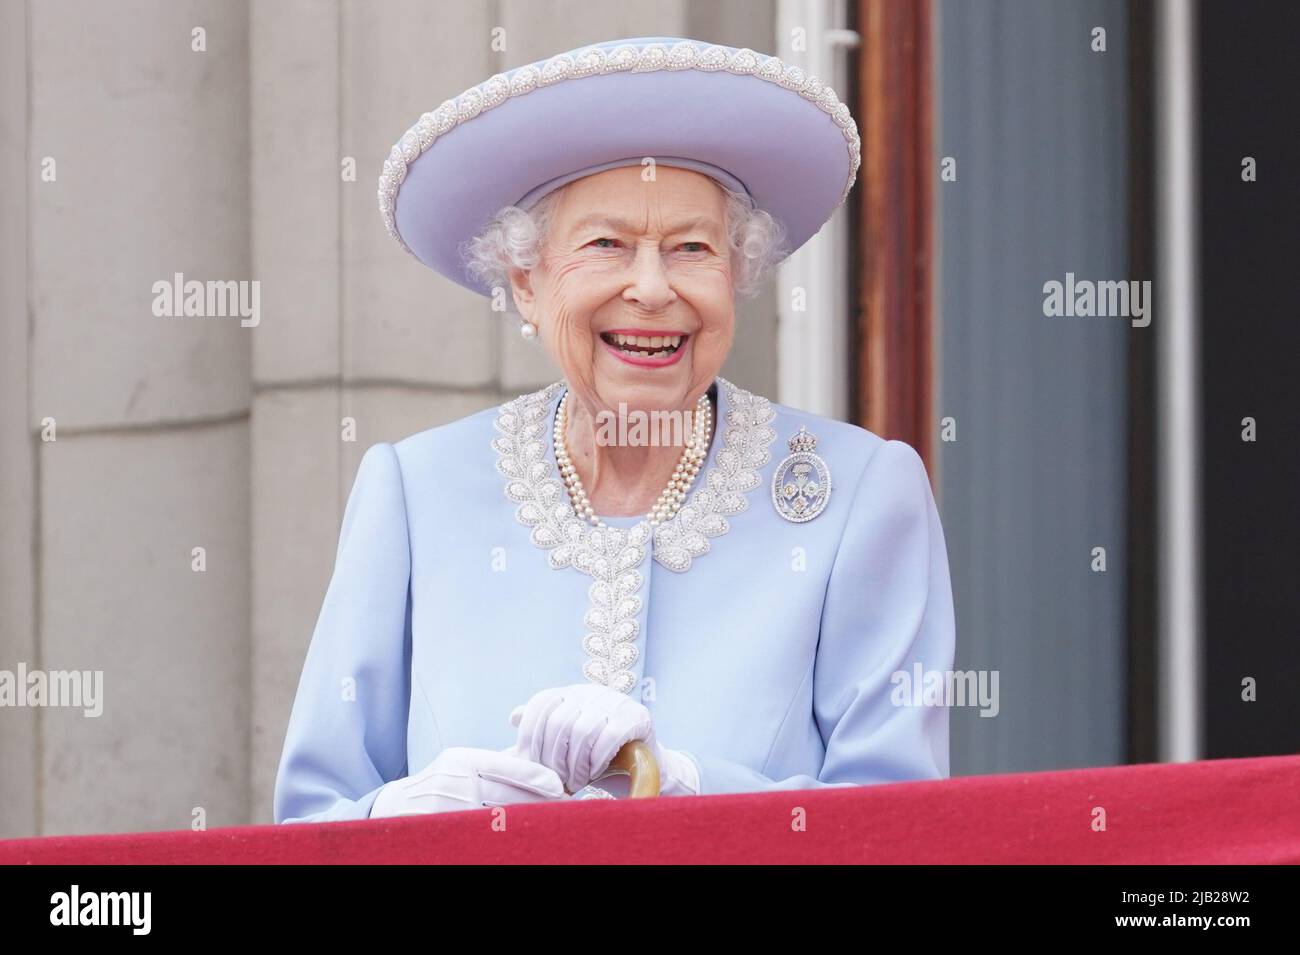 Königin Elizabeth II. Sieht während der Trooping the Color Zeremonie auf der Horse Guards Parade im Zentrum von London vom Balkon aus zu, wie die Queen am ersten Tag des Platin-Jubiläums ihren offiziellen Geburtstag feiert. Bilddatum: Donnerstag, 2. Juni 2022. Stockfoto